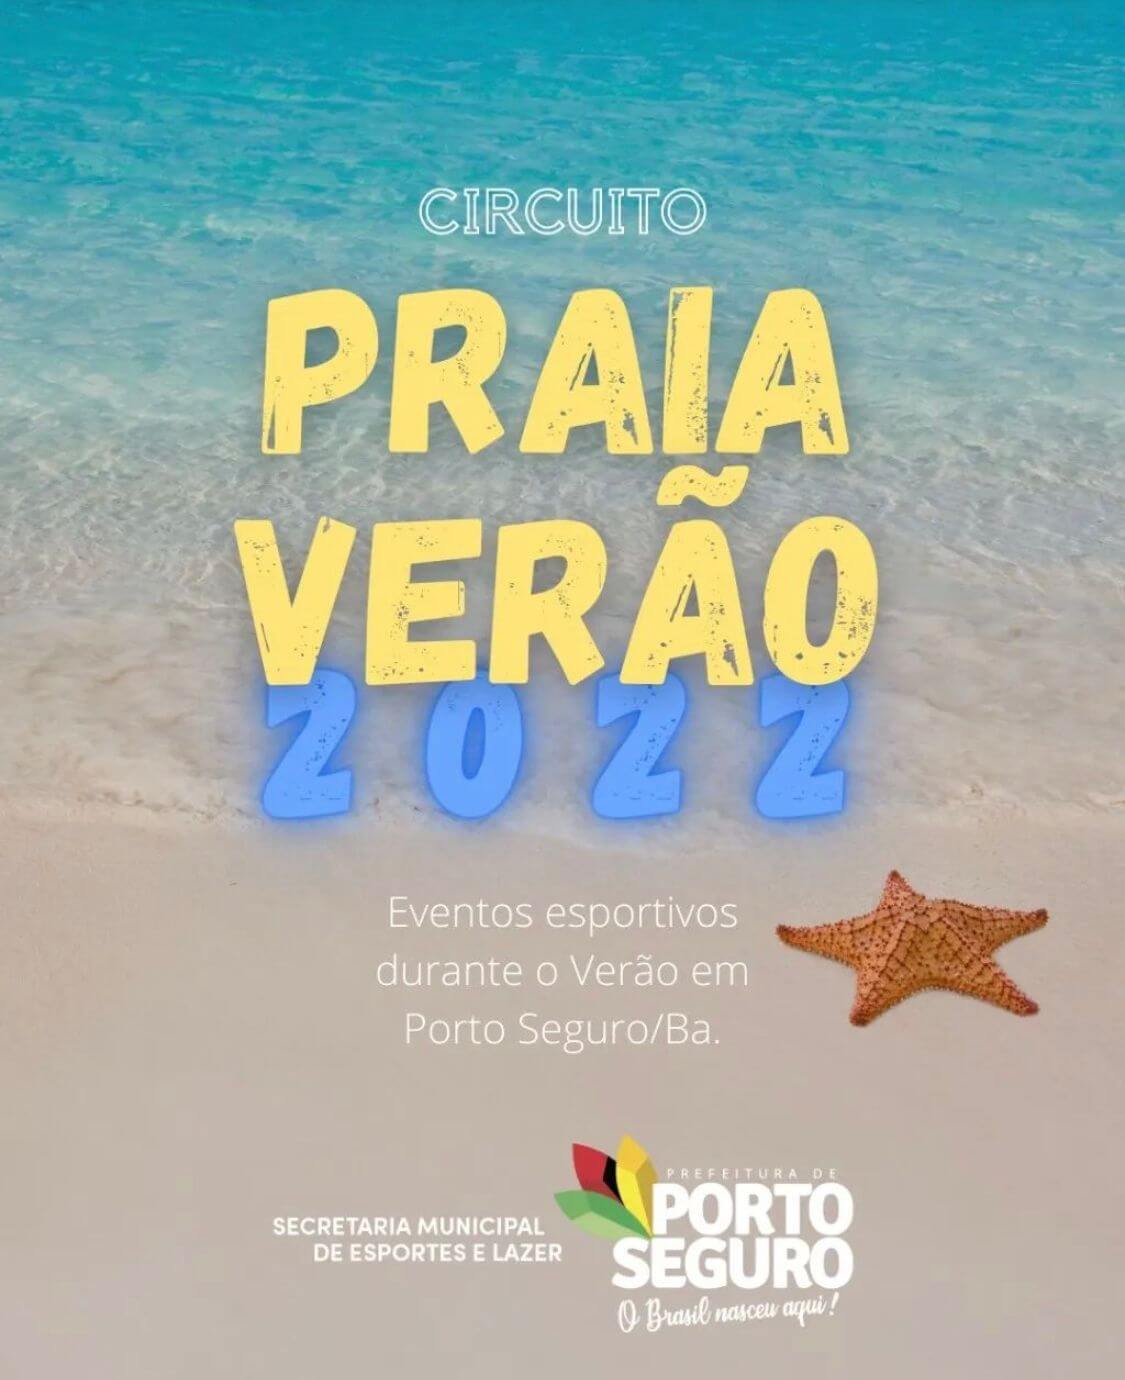 1º Circuito Praia Verão 2022 promete agitar litoral porto-segurense 62